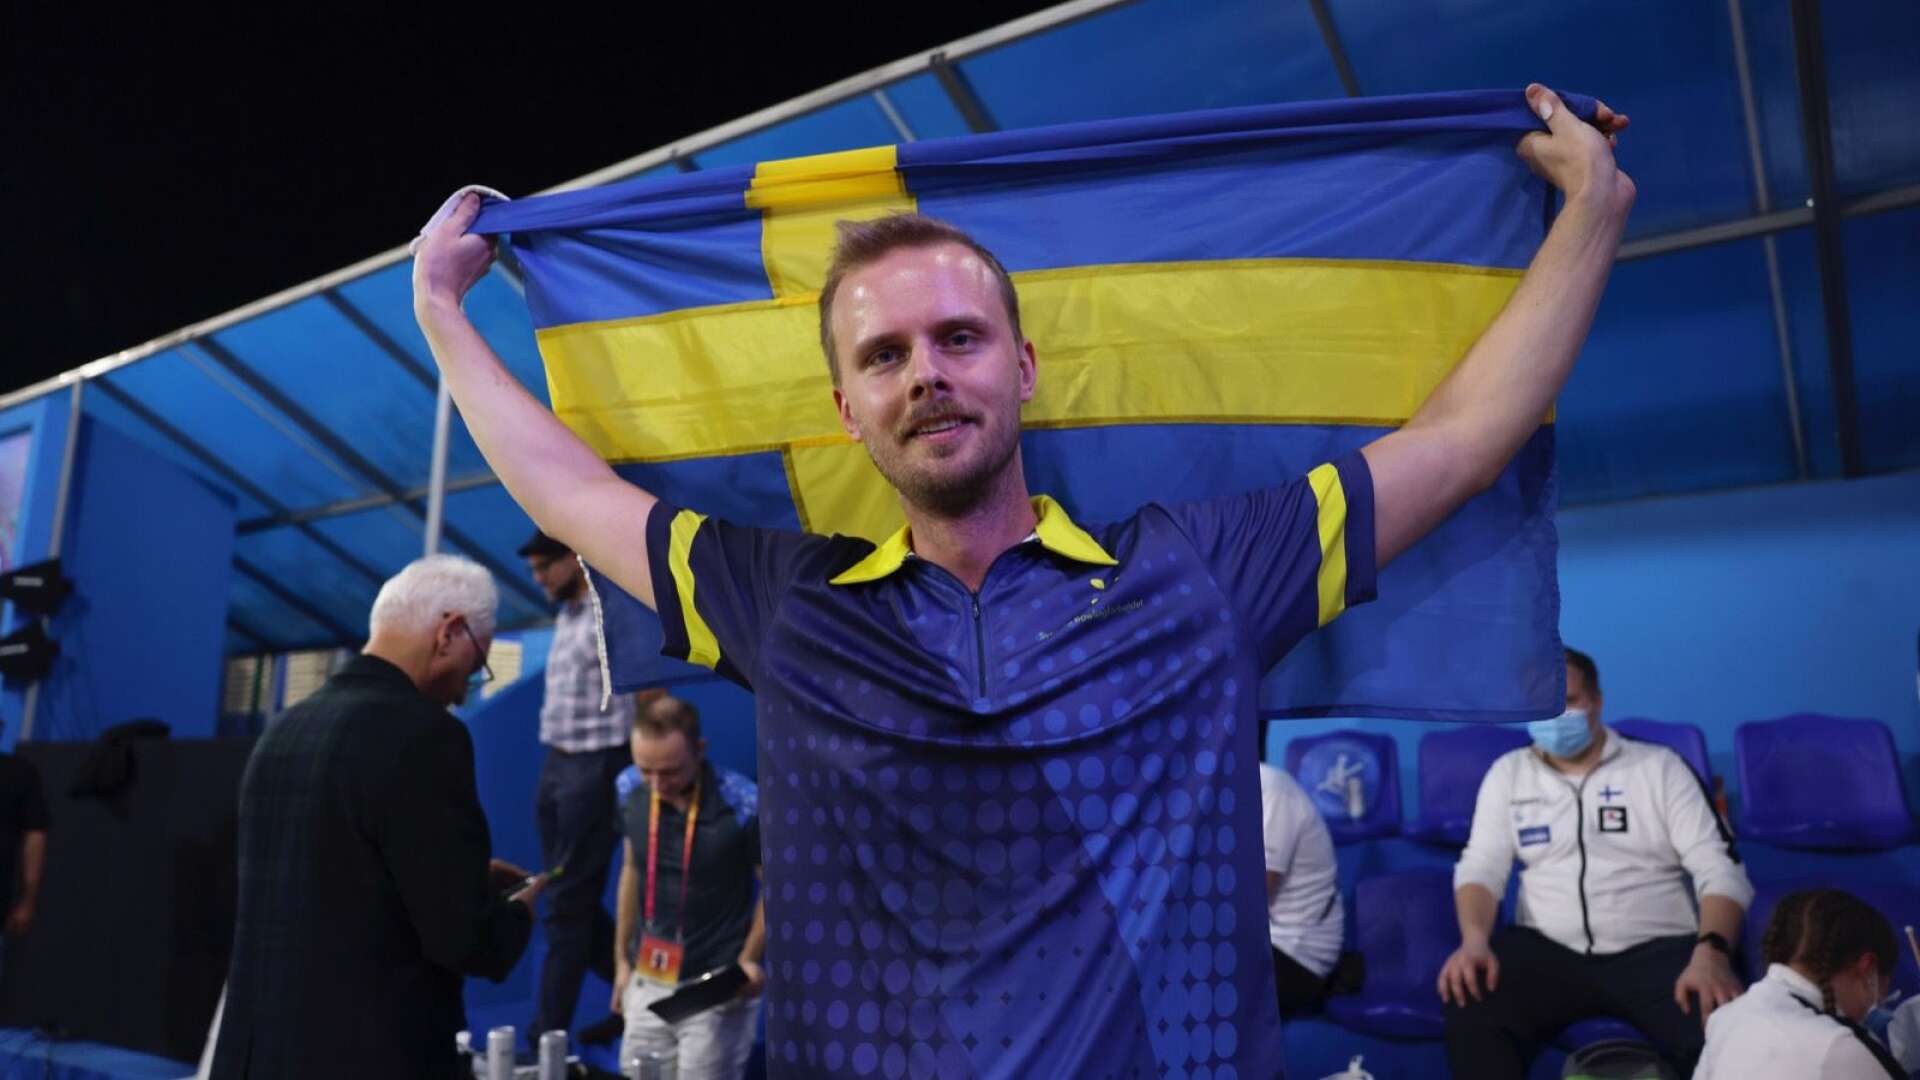 James Blomgren, 34 år från Mariestad, representerandes Team Alingsås, vann VM-guld i singel på IBF Super World Championships i Dubai.